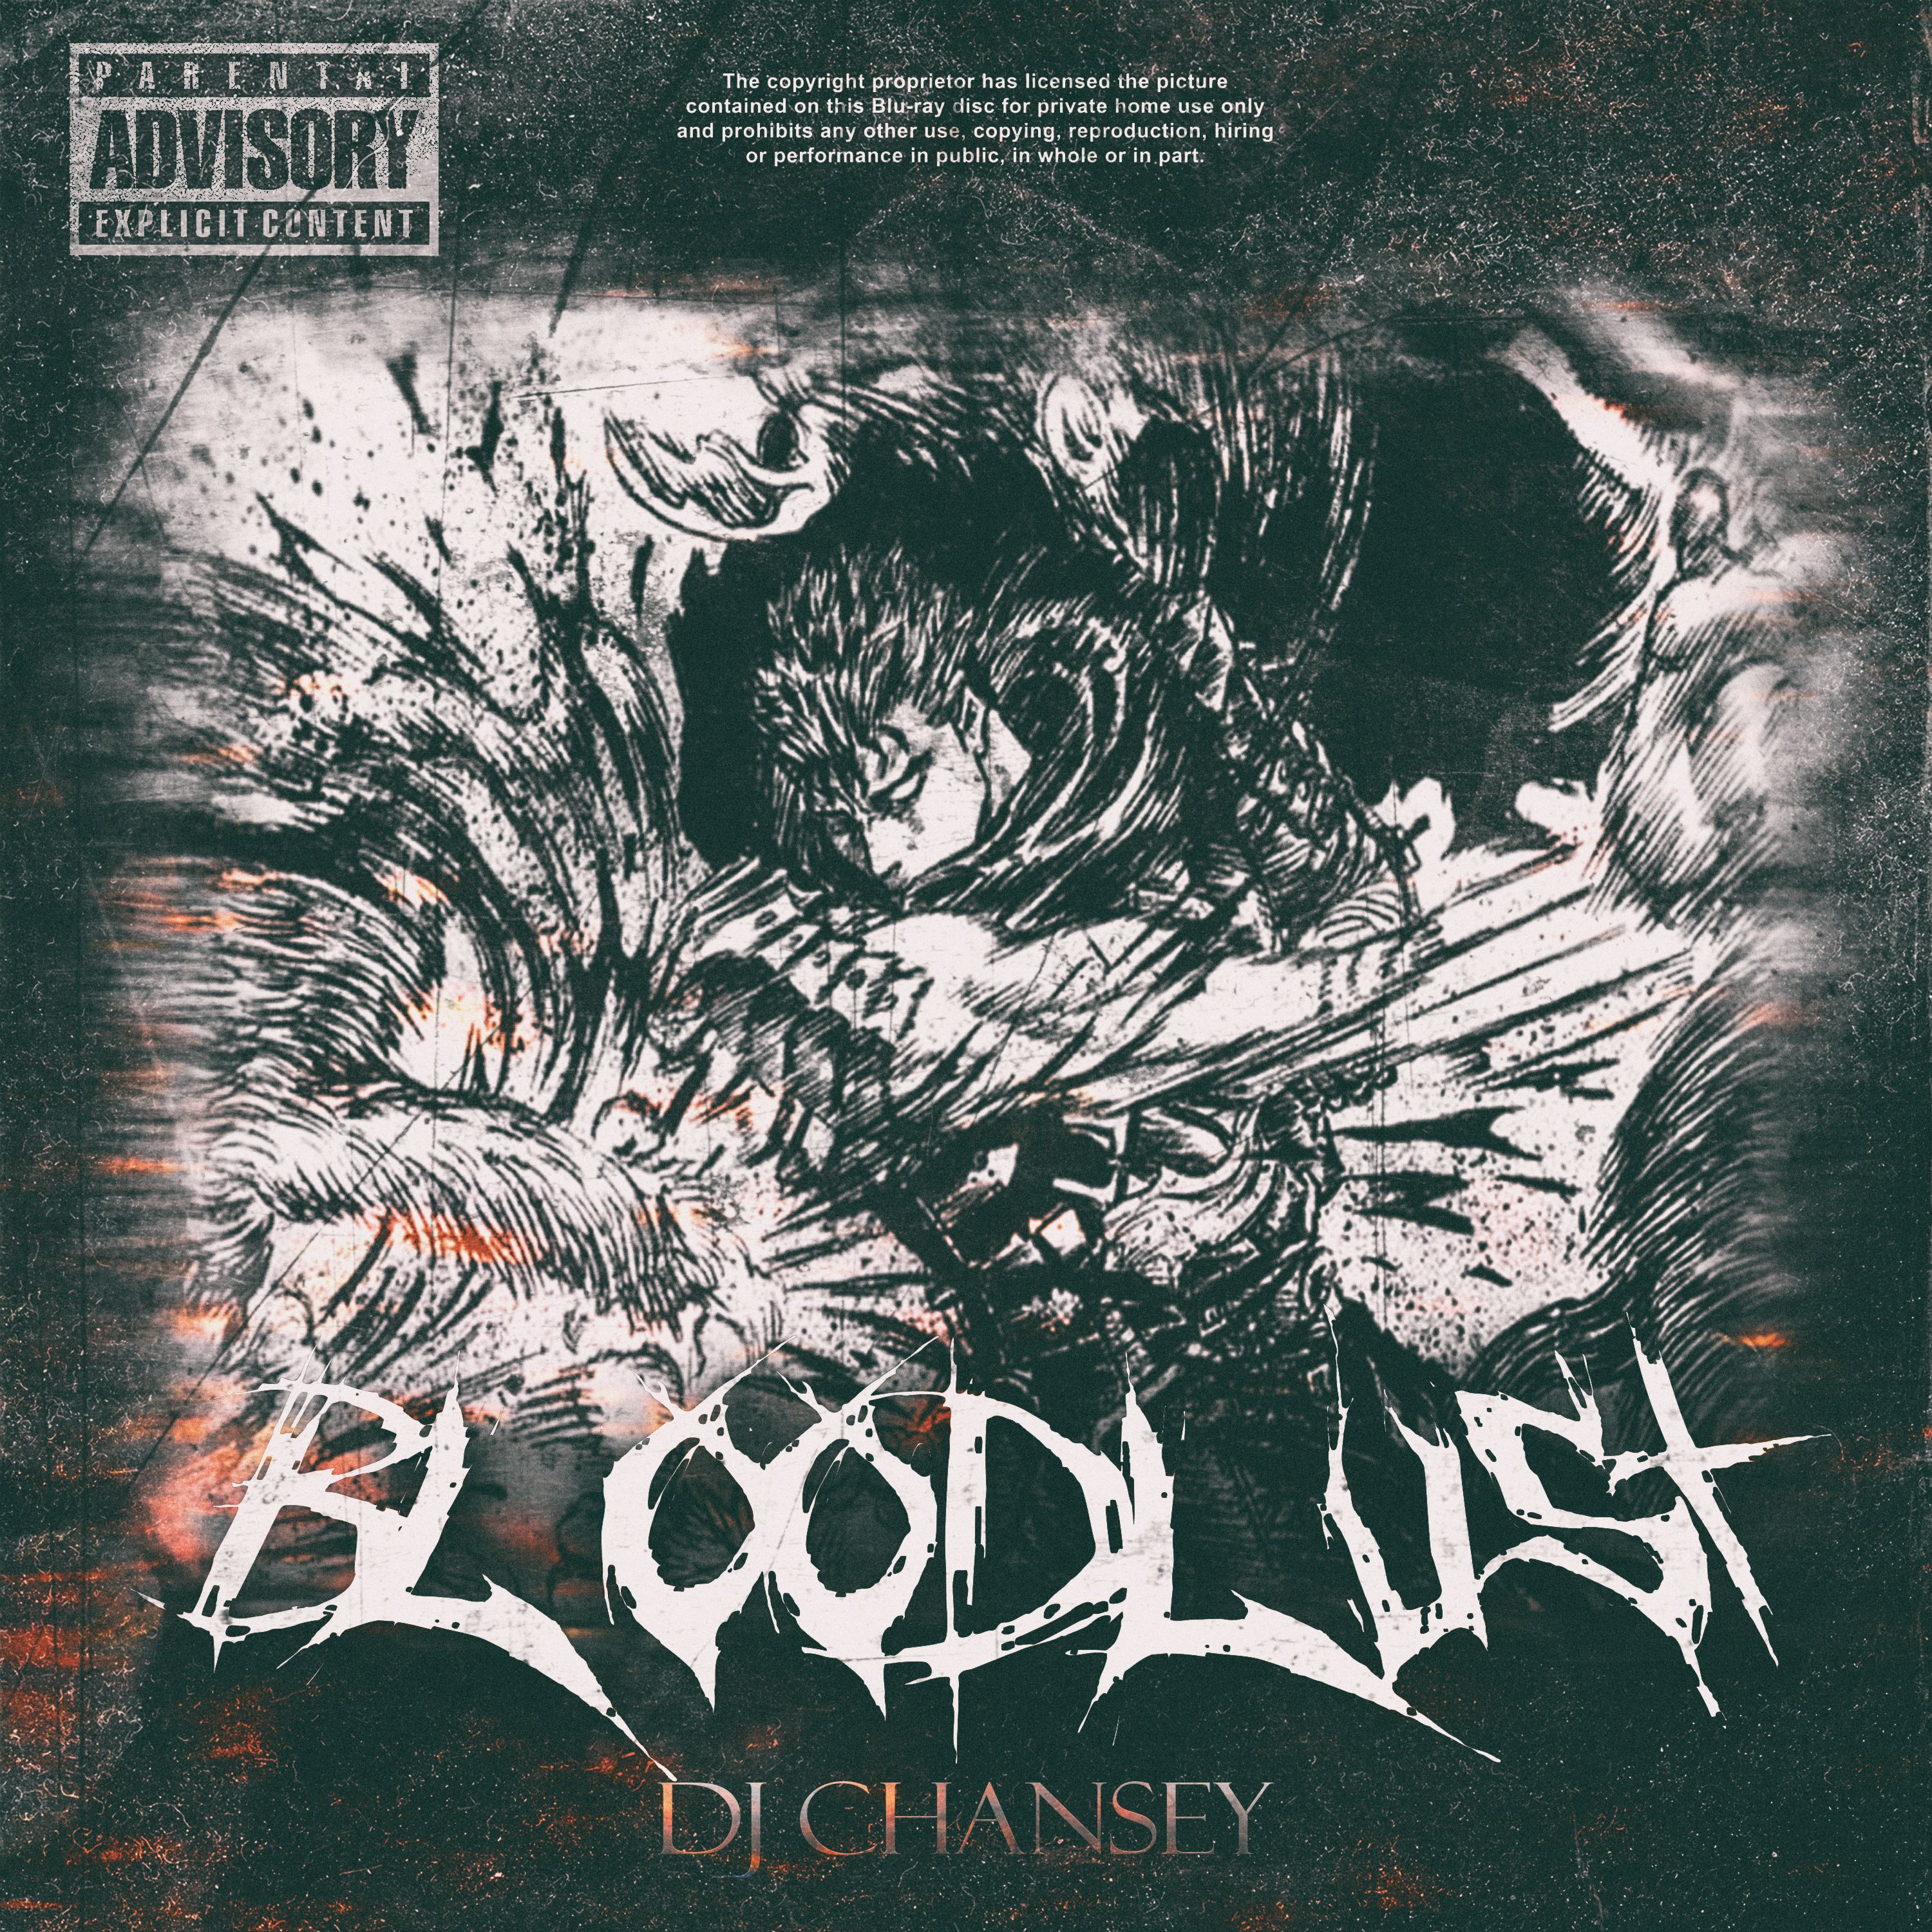 Download DJ CHANSEY - BLOODLUST